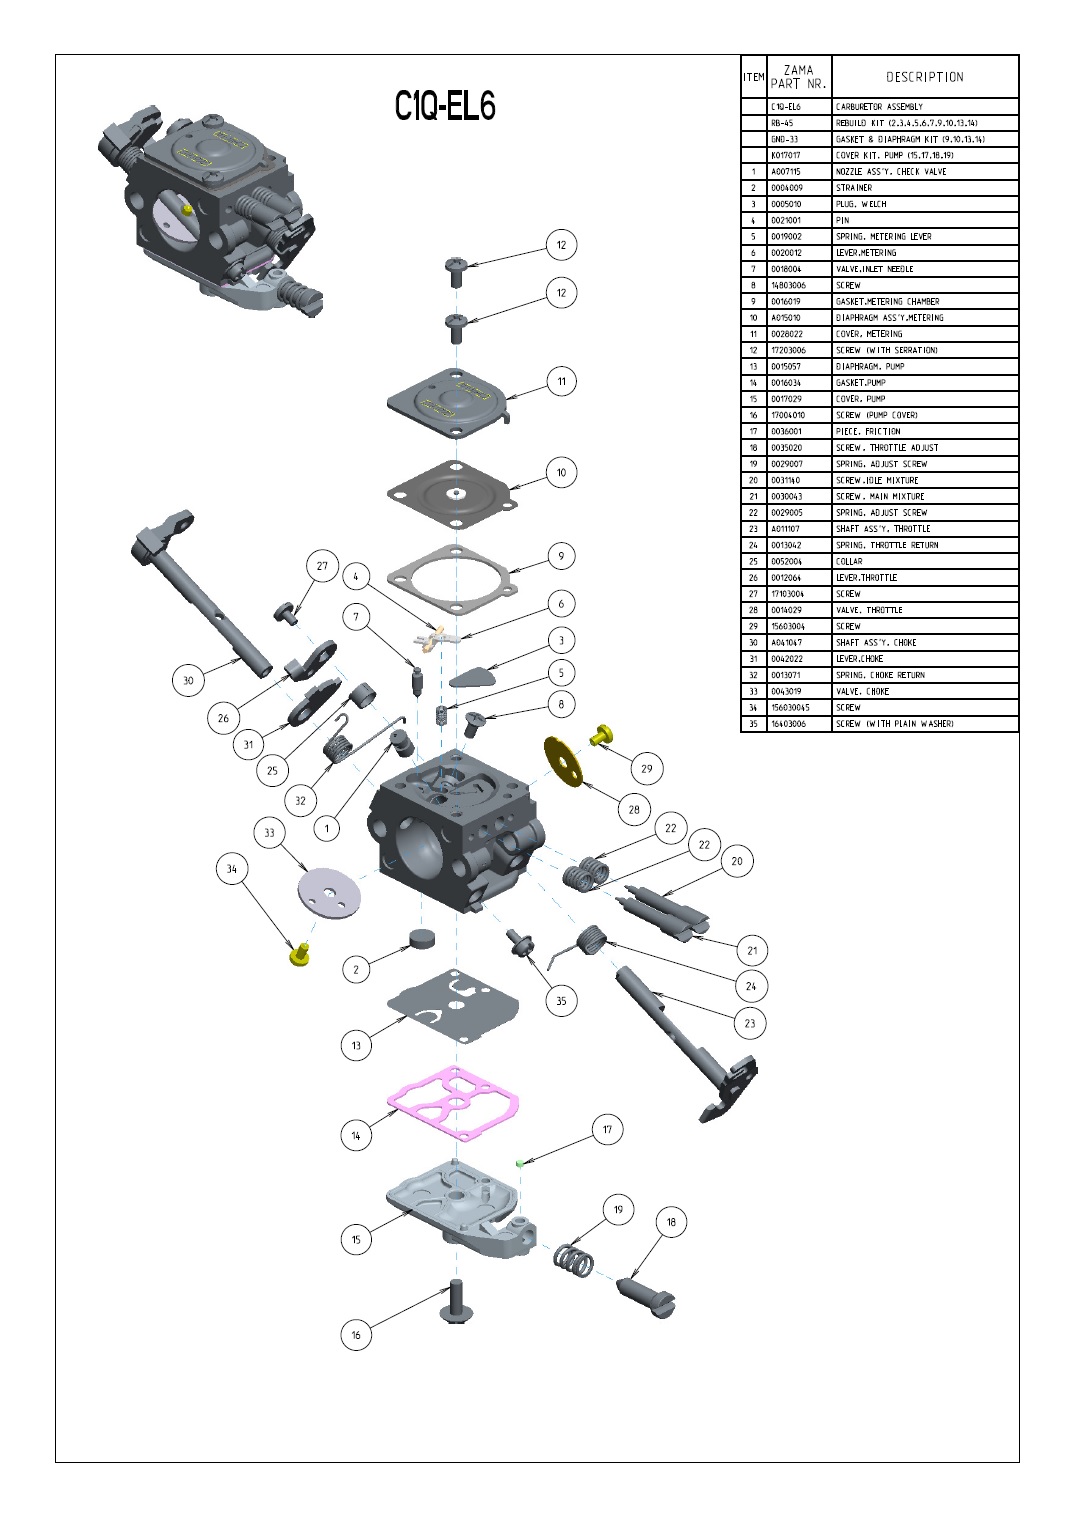 Carburetor Kit for Zama C1Q-S75, A; C1Q-S76, A; C1Q-77, A; C1Q-S84, A-B;  C1Q-S85, A-B; C1Q-S86 RB-105